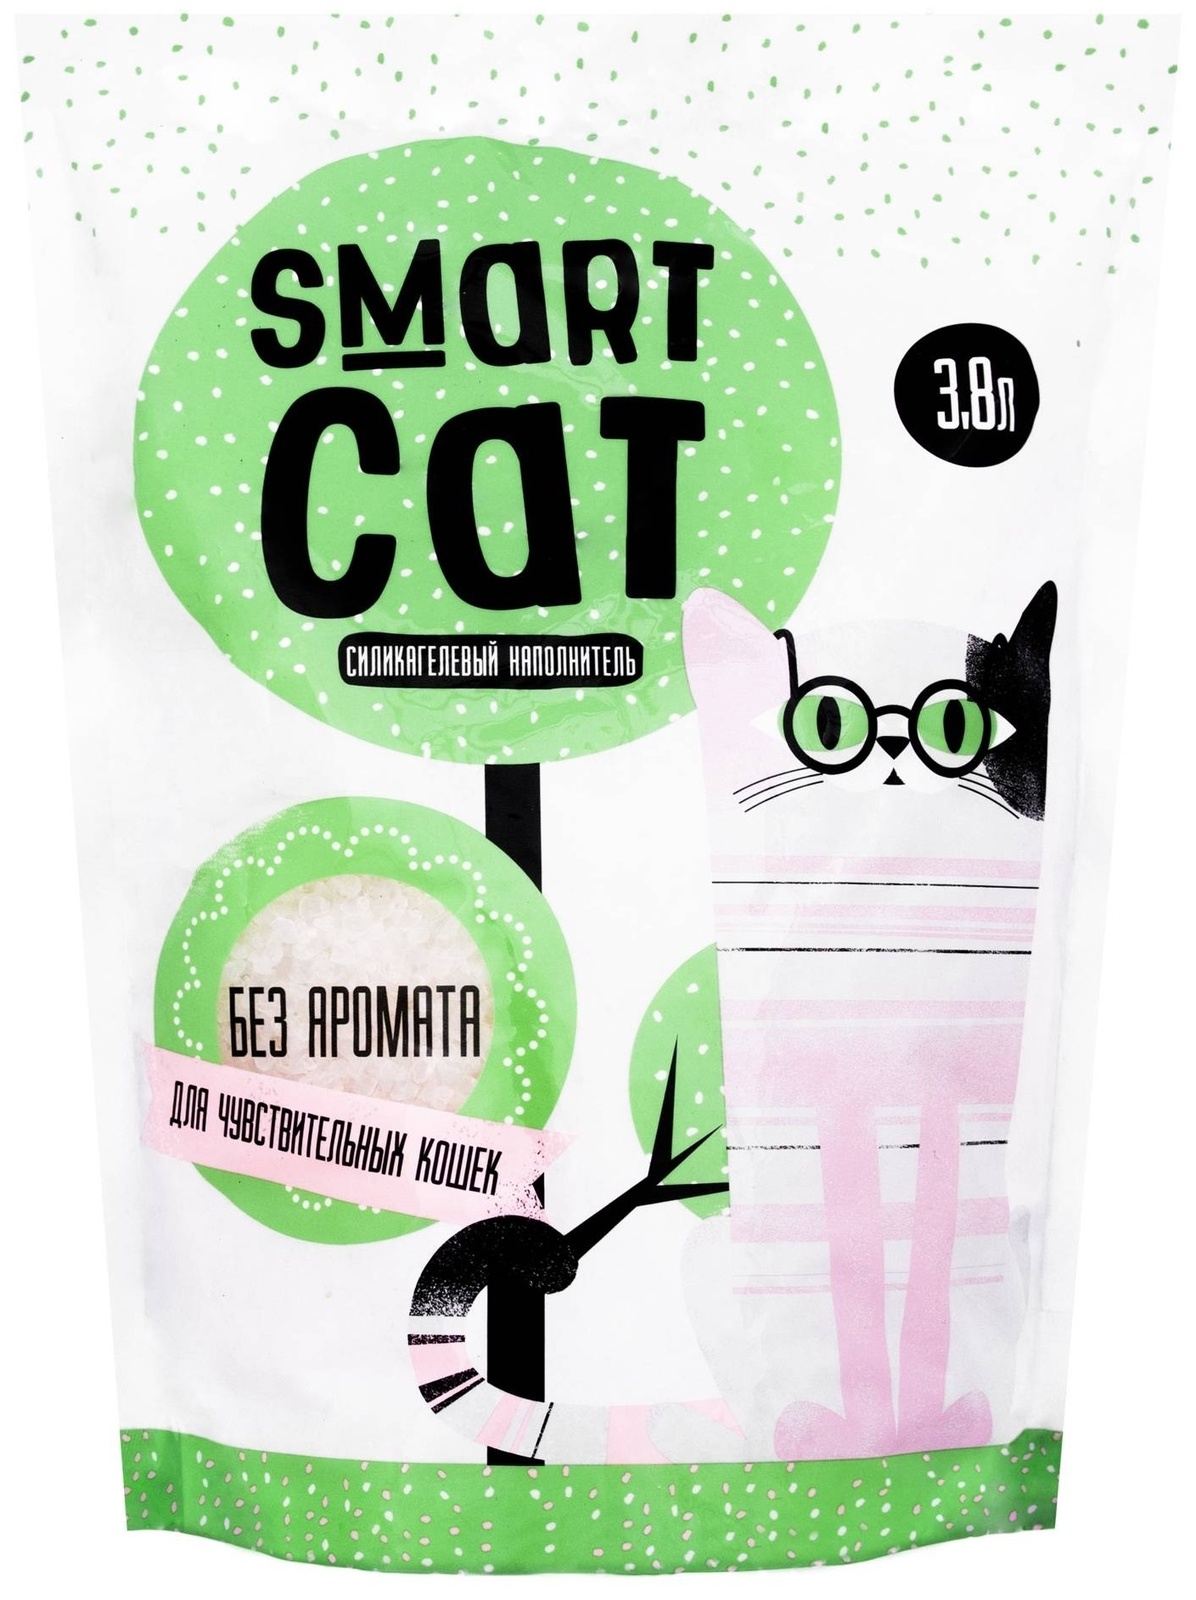 Силикагелевый наполнитель для чувствительных кошек, без аромата (3,32 кг) Smart Cat наполнитель Силикагелевый наполнитель для чувствительных кошек, без аромата (3,32 кг) - фото 1